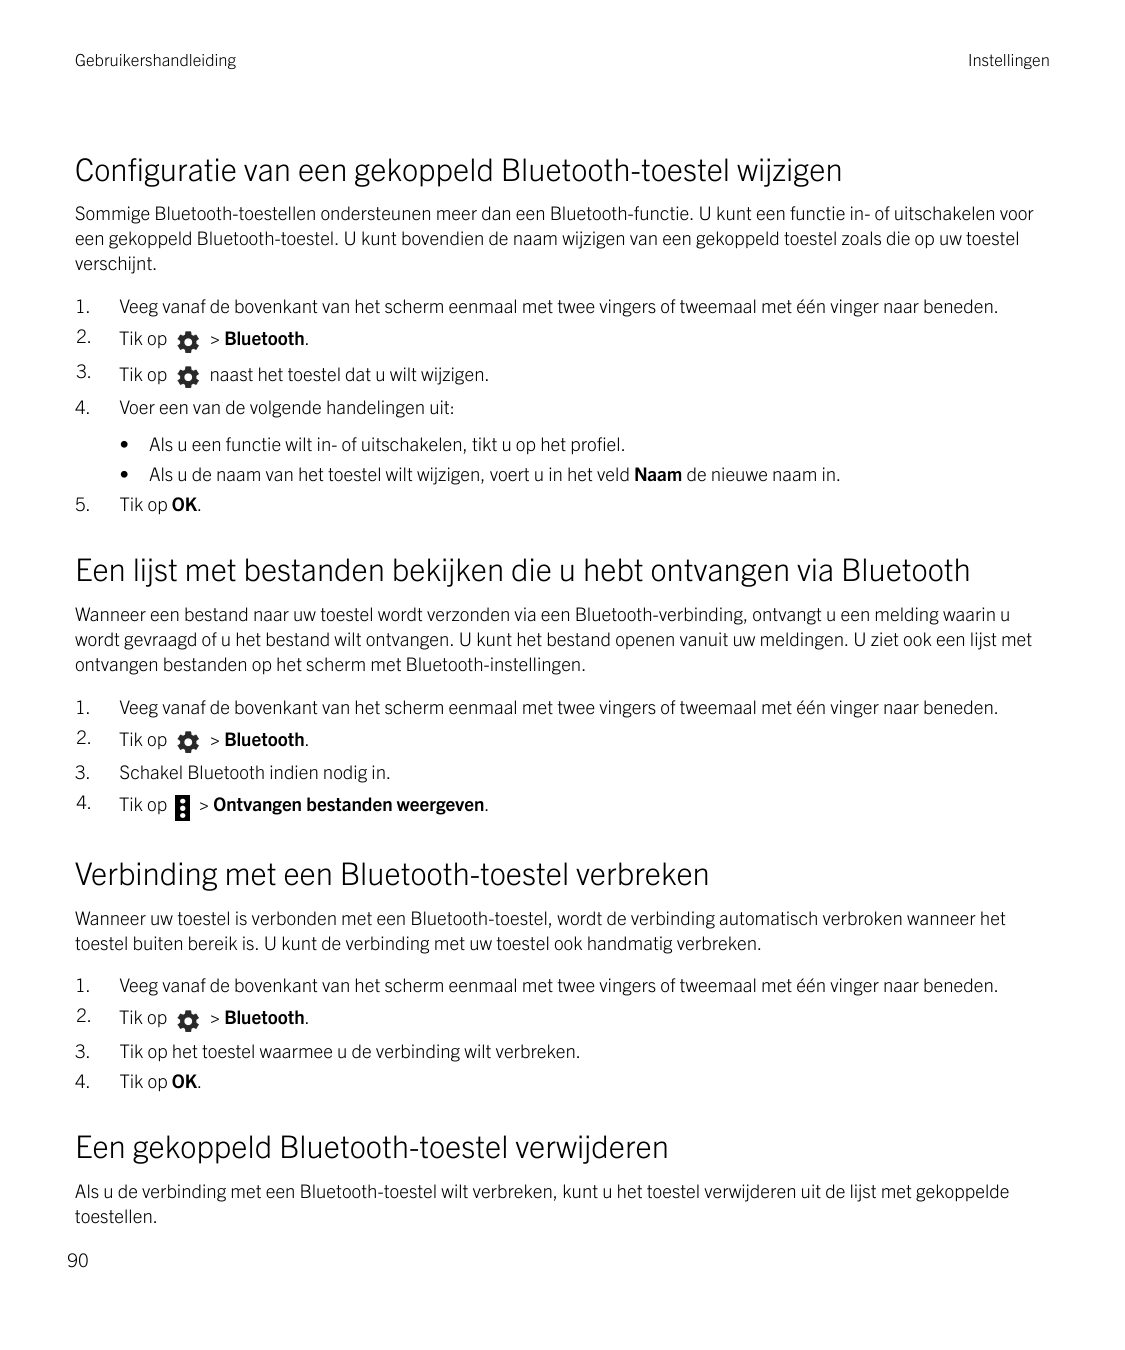 GebruikershandleidingInstellingenConfiguratie van een gekoppeld Bluetooth-toestel wijzigenSommige Bluetooth-toestellen ondersteu